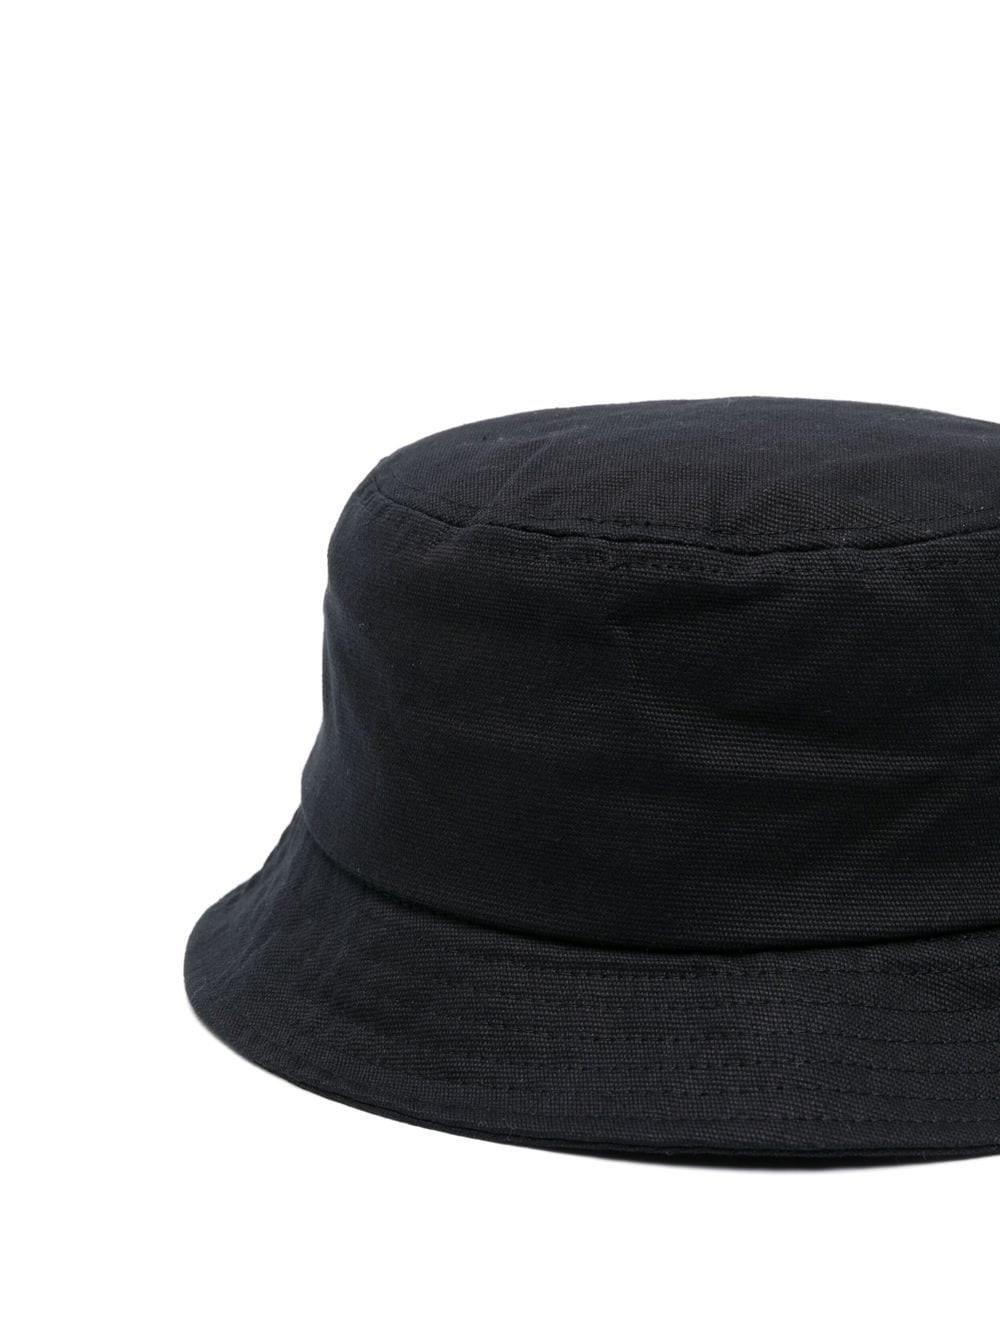 KENZO Logo Bucket Hat in Black for Men | Lyst